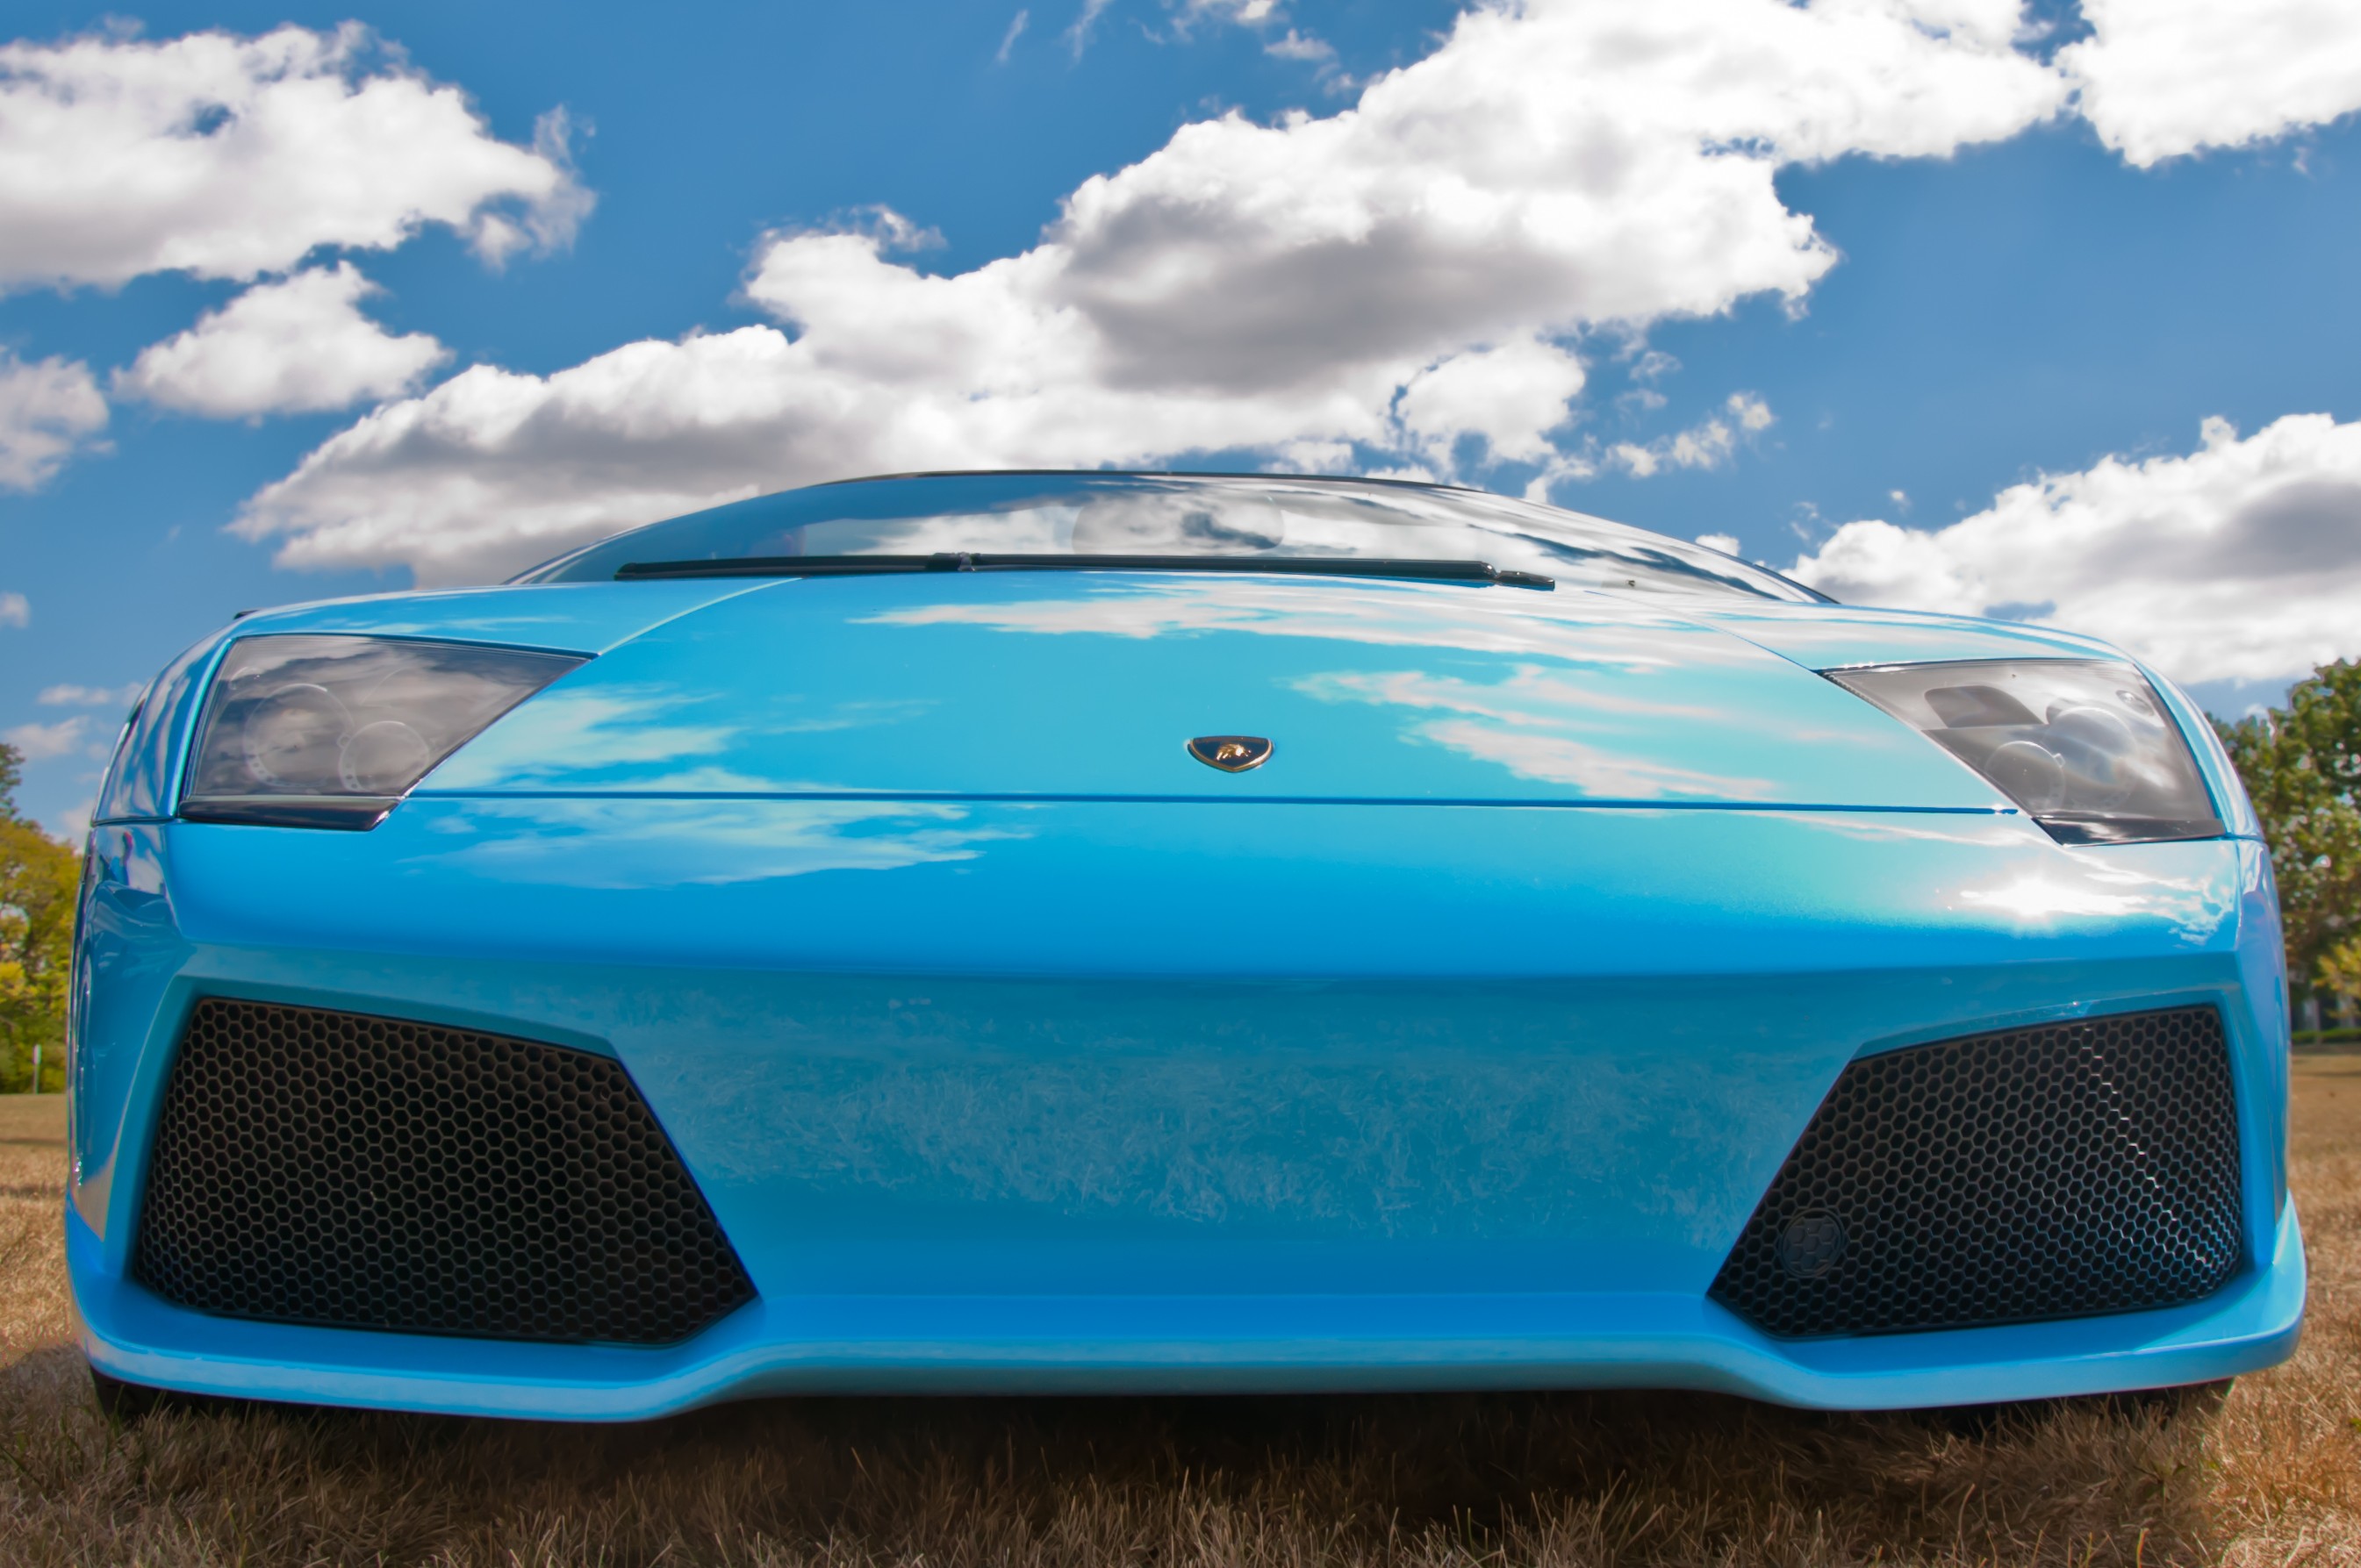 General 2690x1787 car Lamborghini blue cars vehicle closeup